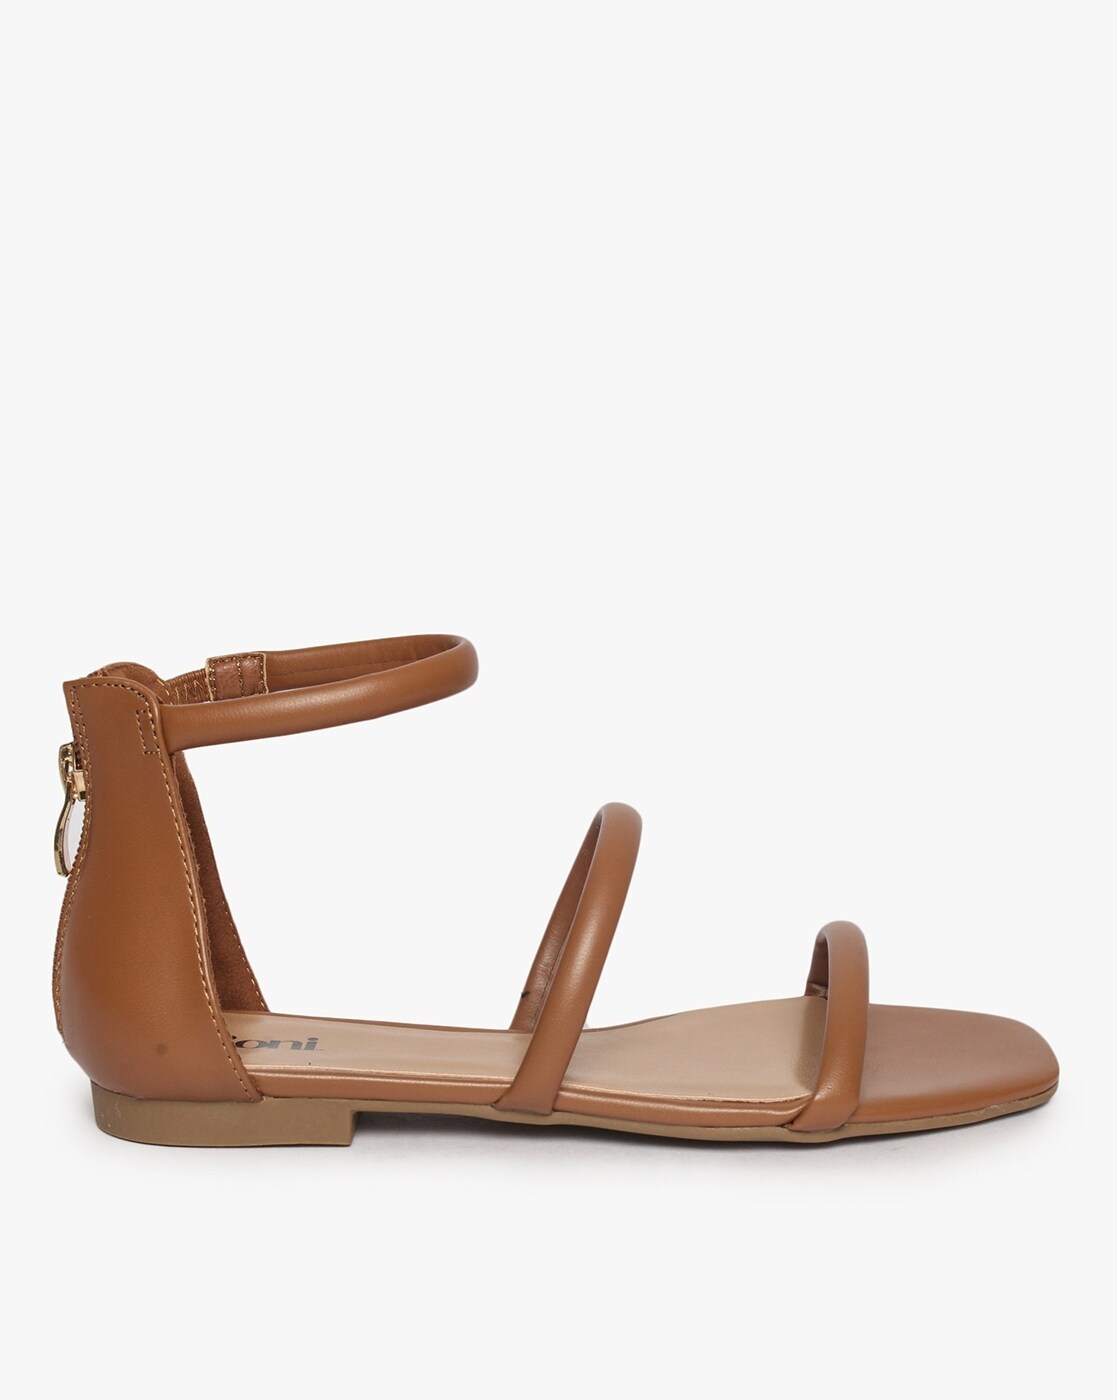 Rivecour - N°126 Flat Leather Sandals - Cognac | Smallable